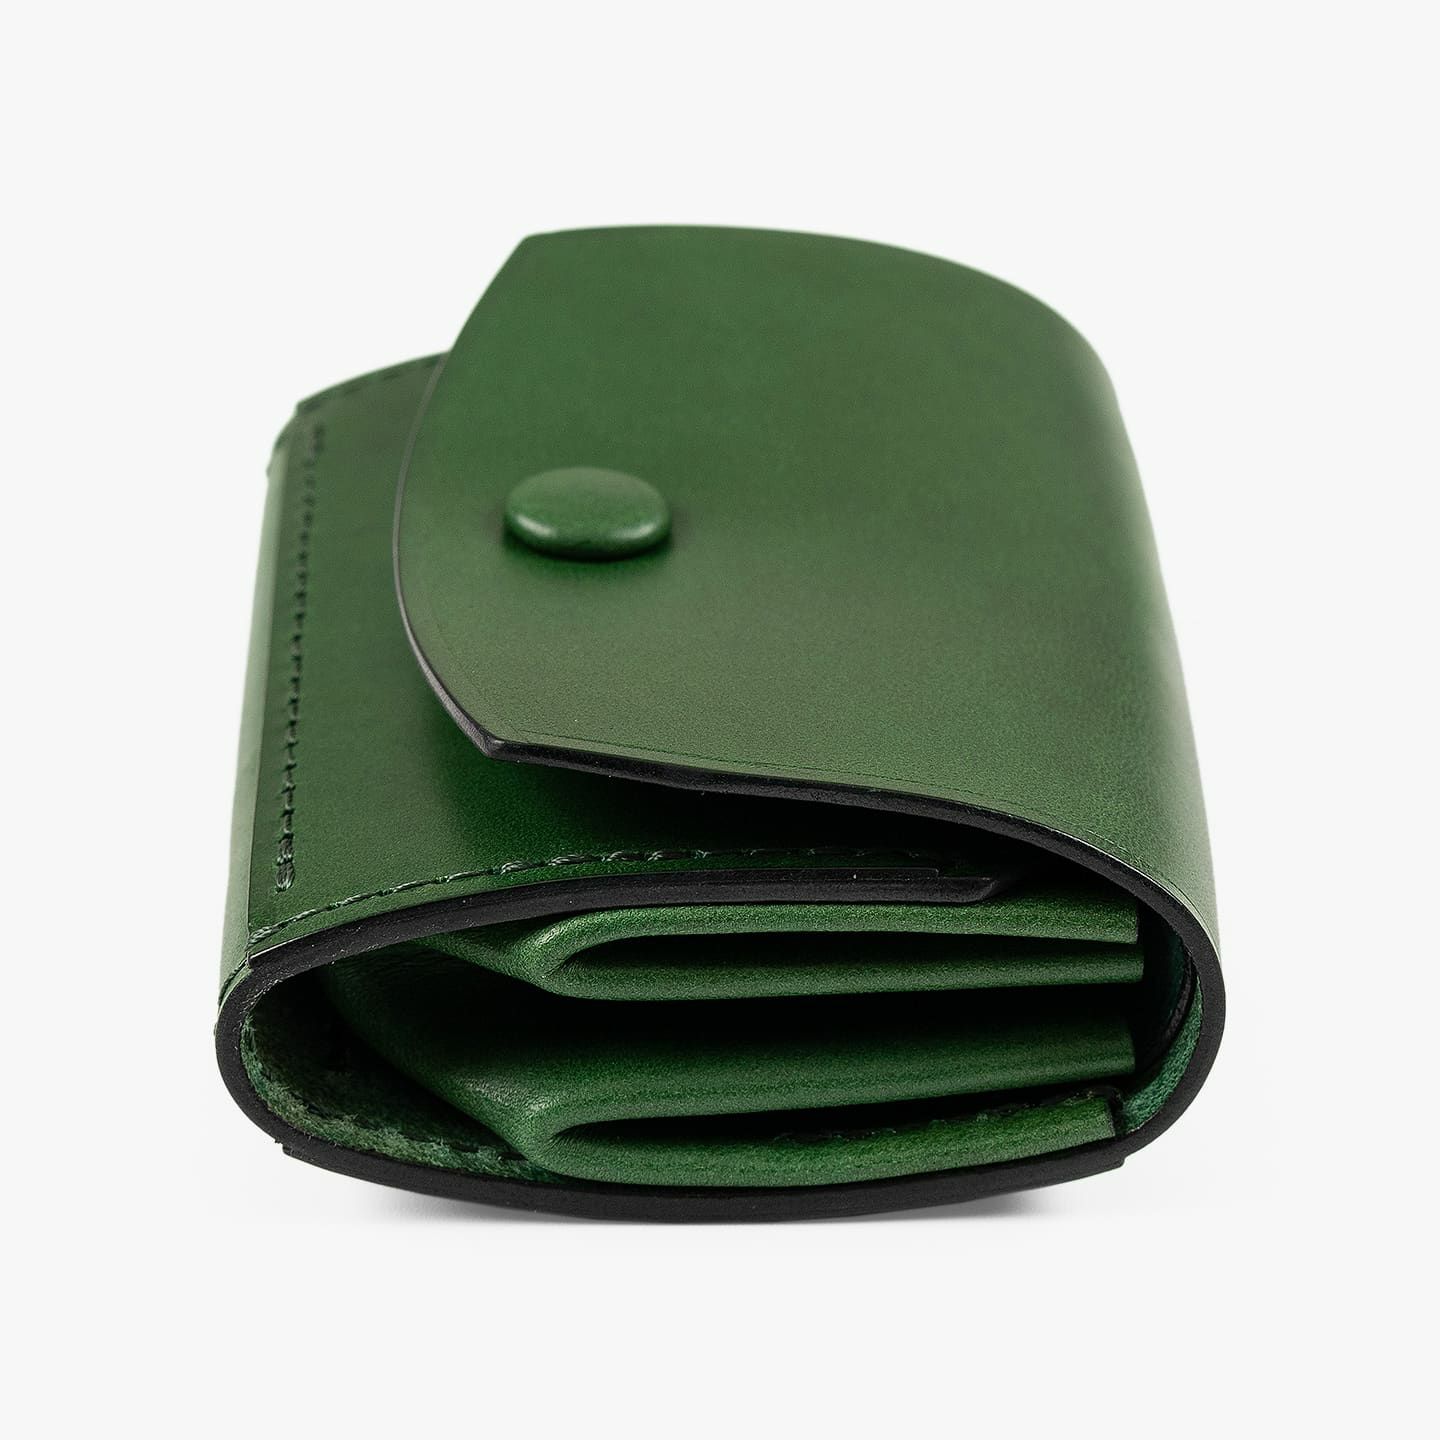 ブッテーロ コンパクトウォレット “ドブラール” | 大人のバッグ・財布 ...